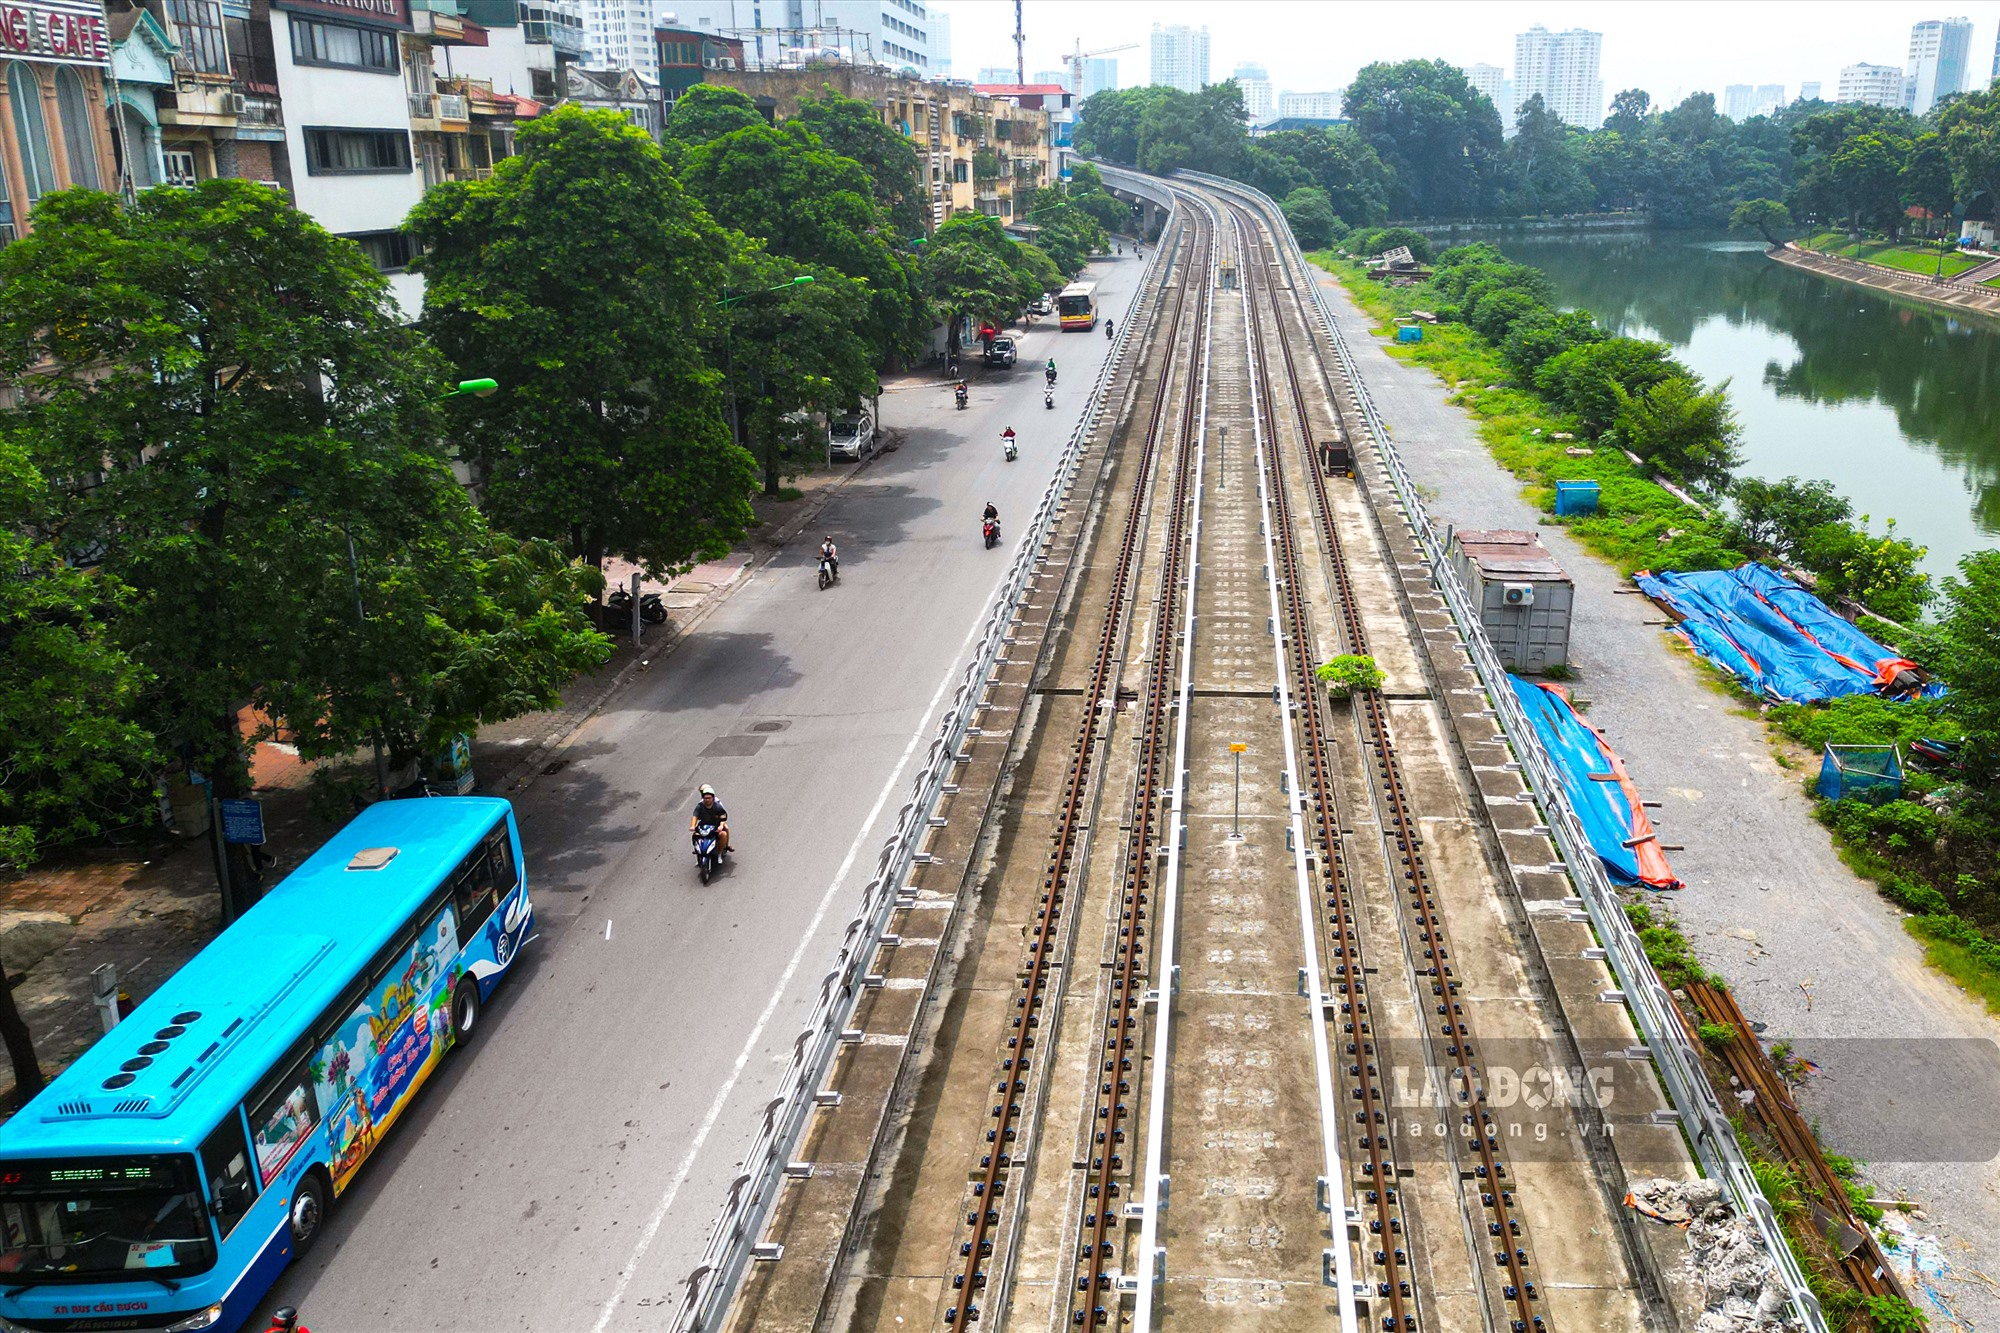 Được biết, trên dọc lộ trình tàu Nhổn - Ga Hà Nội hiện đang có 31 tuyến buýt hoạt động và đủ điều kiện kết nối với đoạn tuyến đường sắt trên cao Nhổn - Cầu Giấy. Dự kiến sẽ có thêm 12 tuyến buýt (3 tuyến được điều chỉnh) kết nối với đường sắt đô thị này.